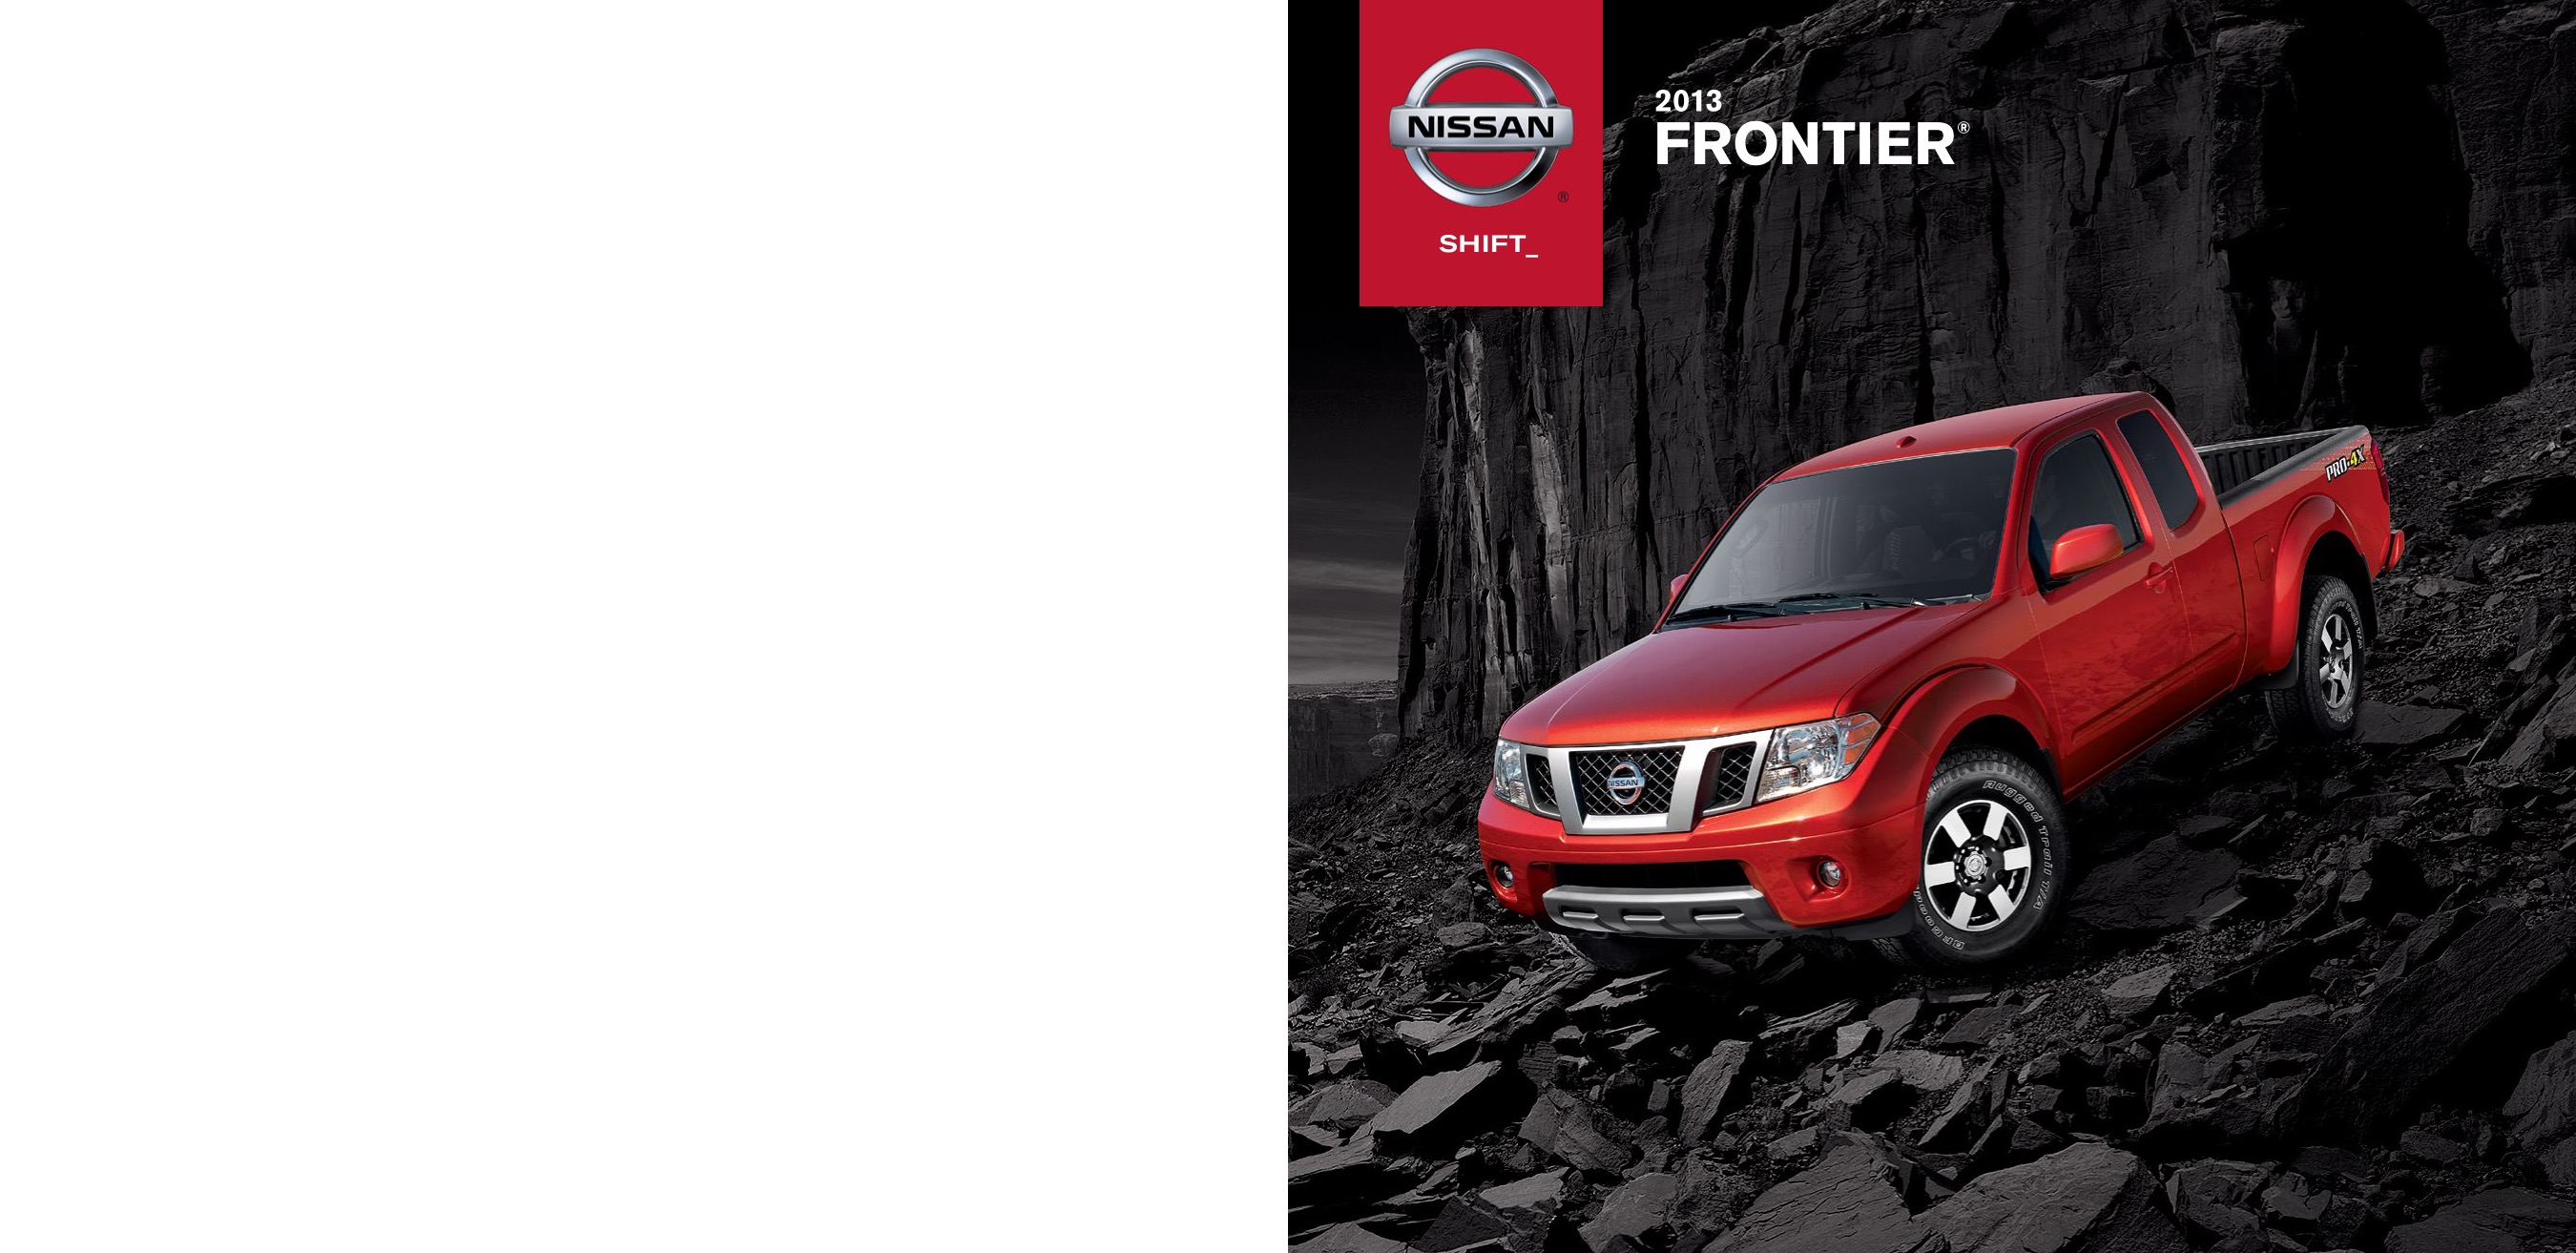 2013 Nissan Frontier Brochure